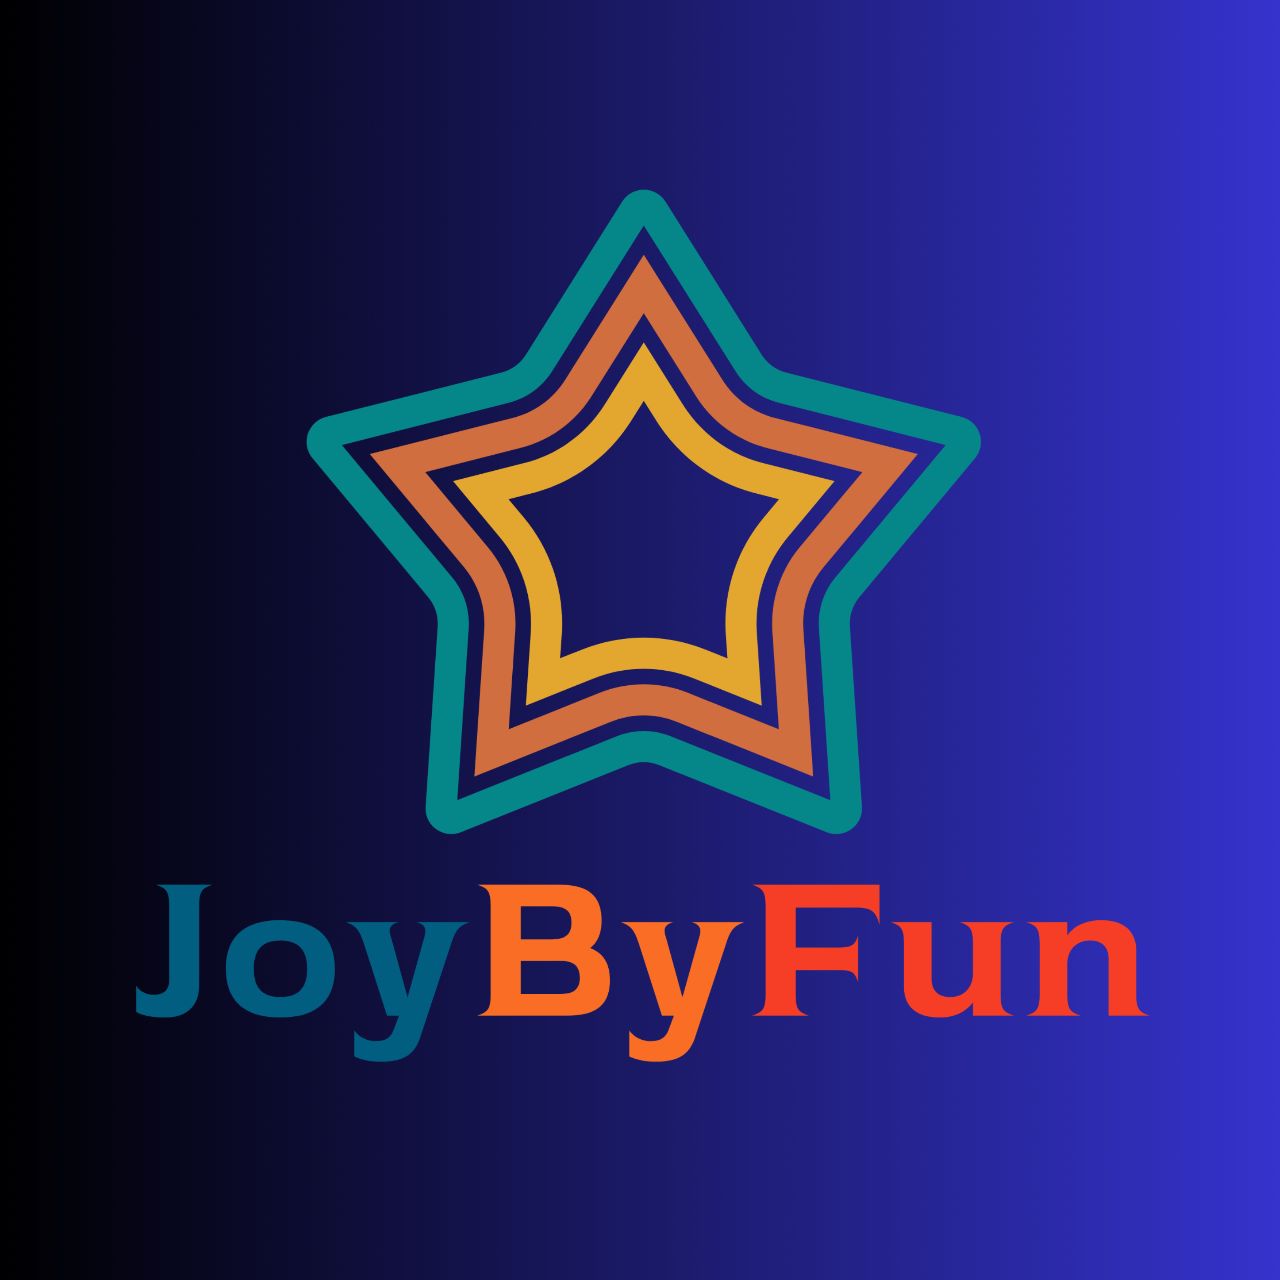 JoybyFun